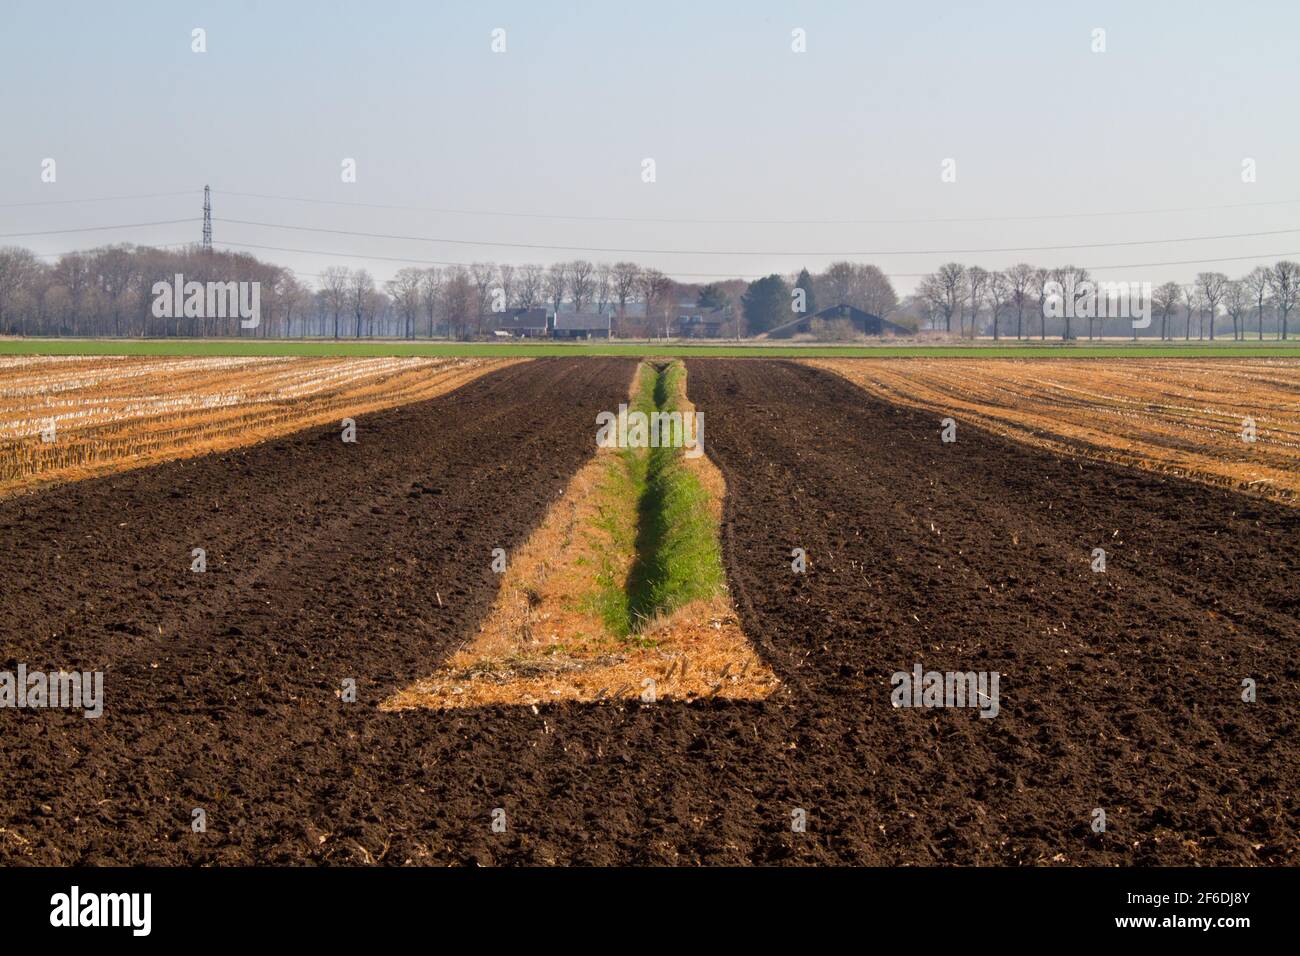 Une agriculture rationnelle au printemps : des lignes droites dans un paysage terne Banque D'Images